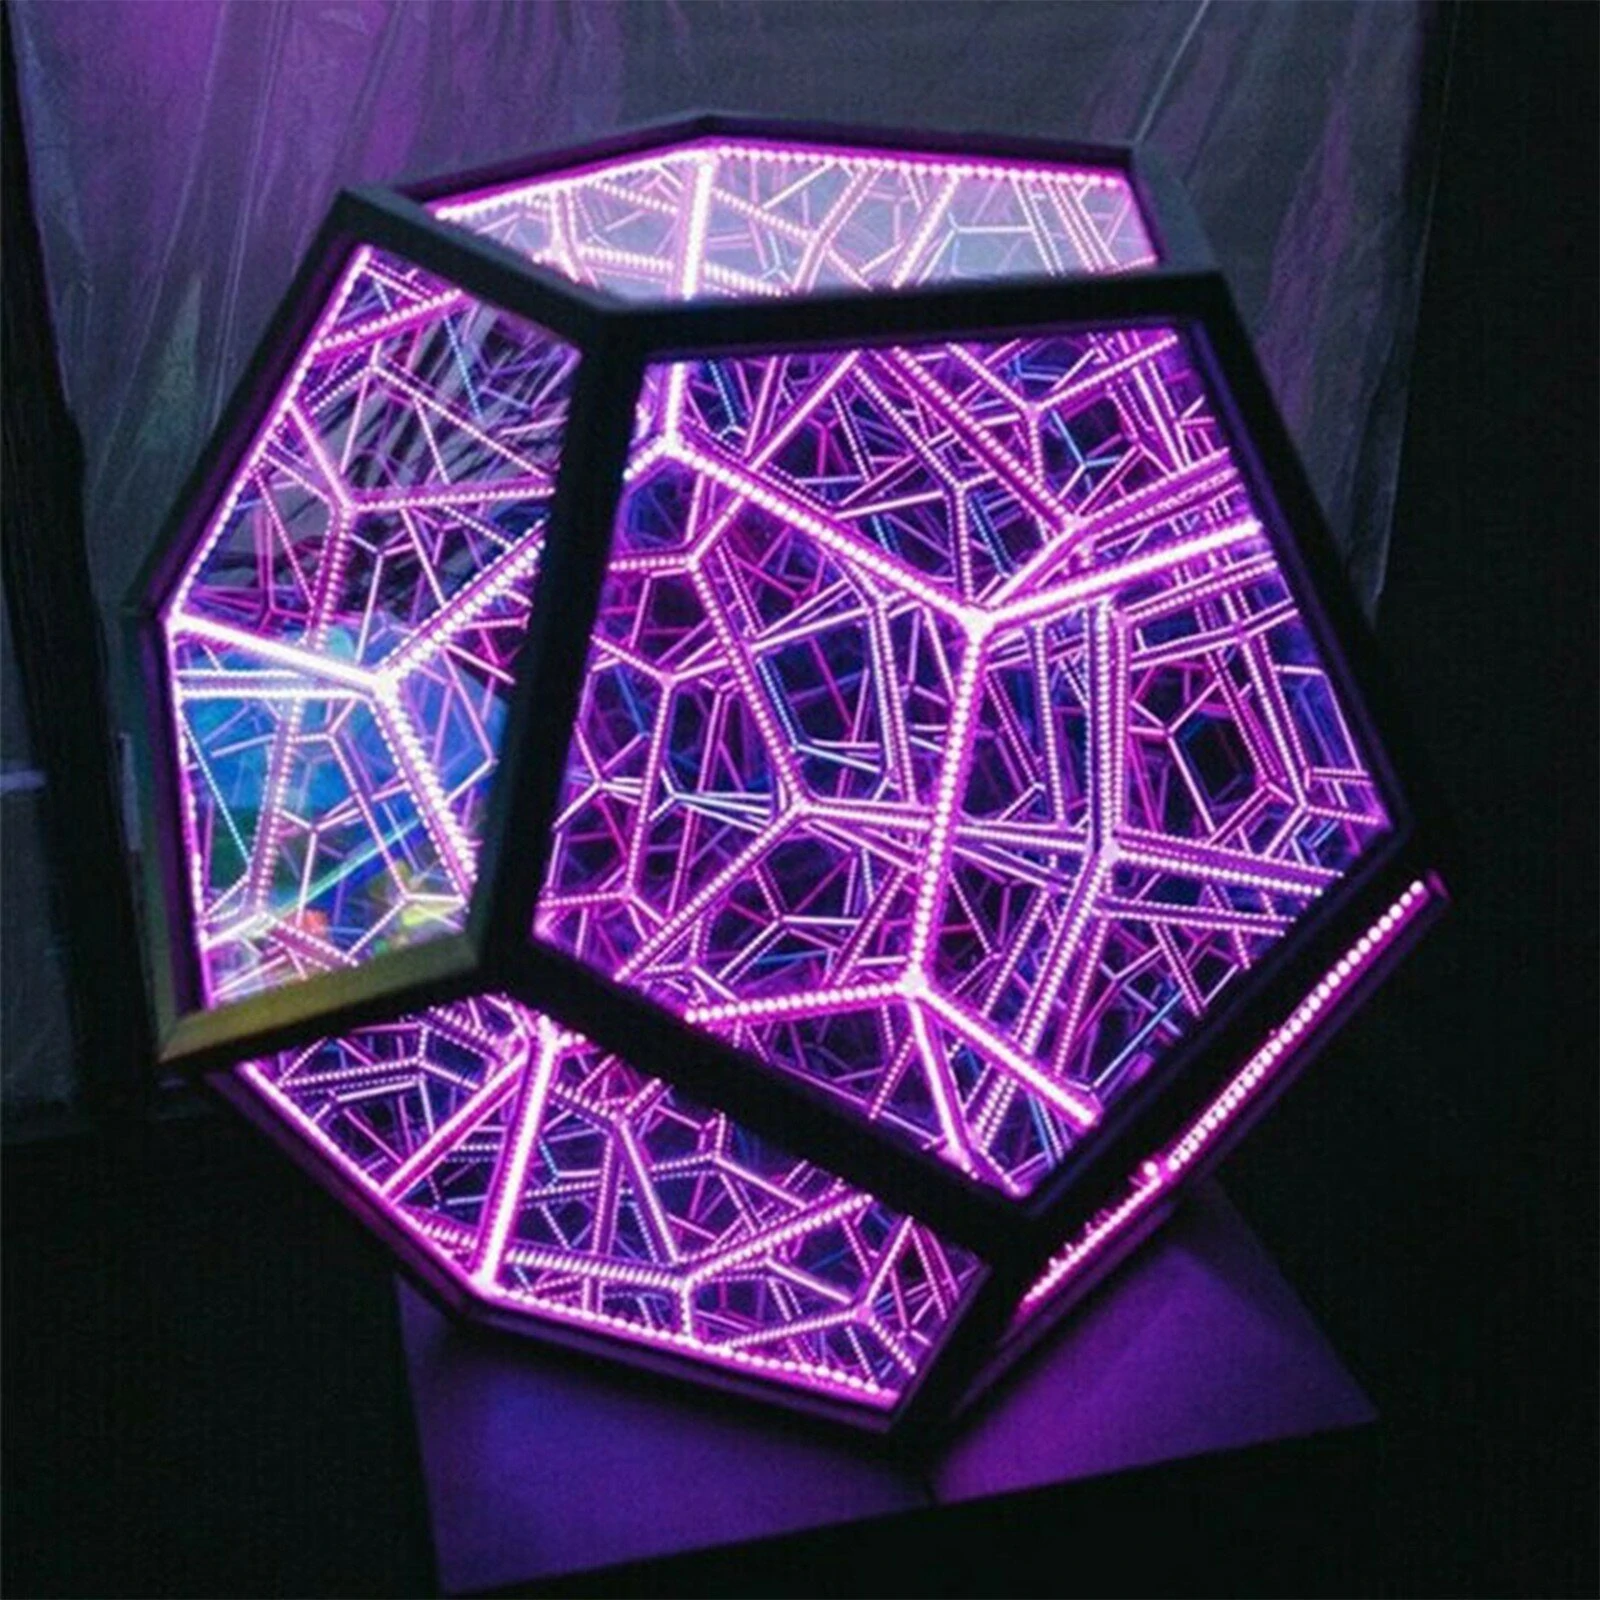 Στα 28,07€ από αποθήκη Κίνας | LED Night Light Infinite Dodecahedron Color Art Light Decor Novelty Christmas Gift Cool Technology Decoration Home Decor